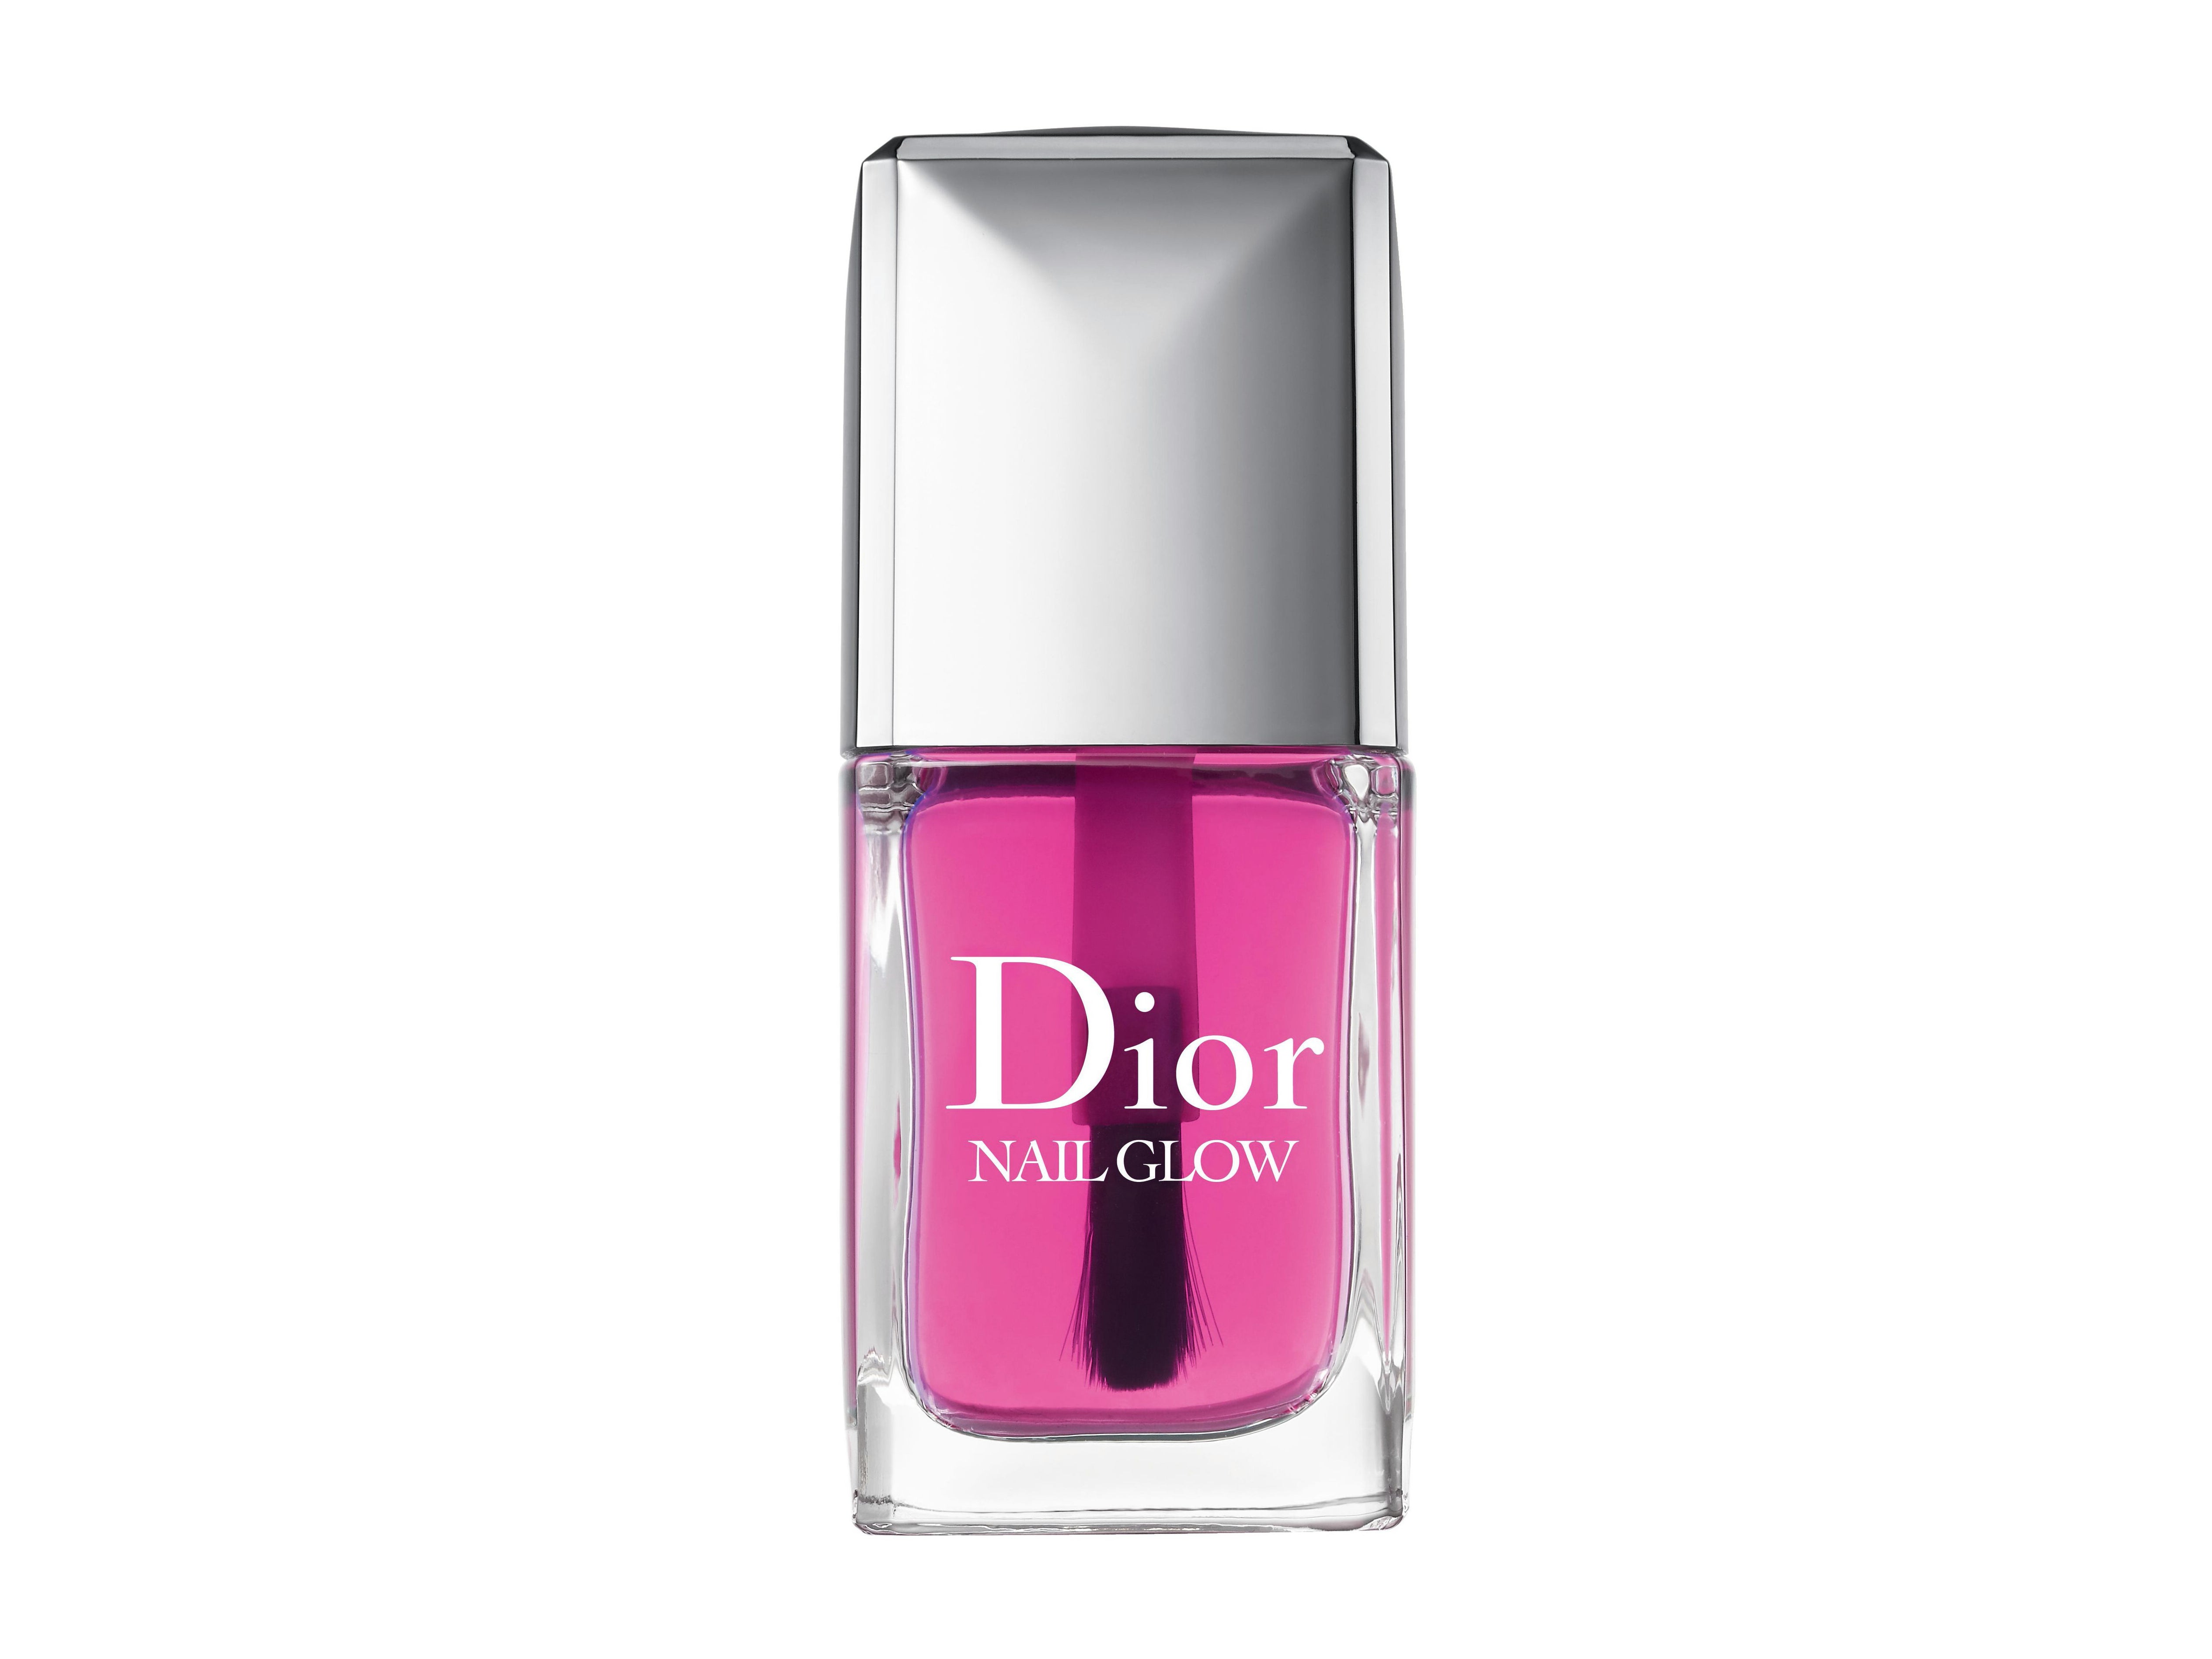 Dior Nail Glow.jpg